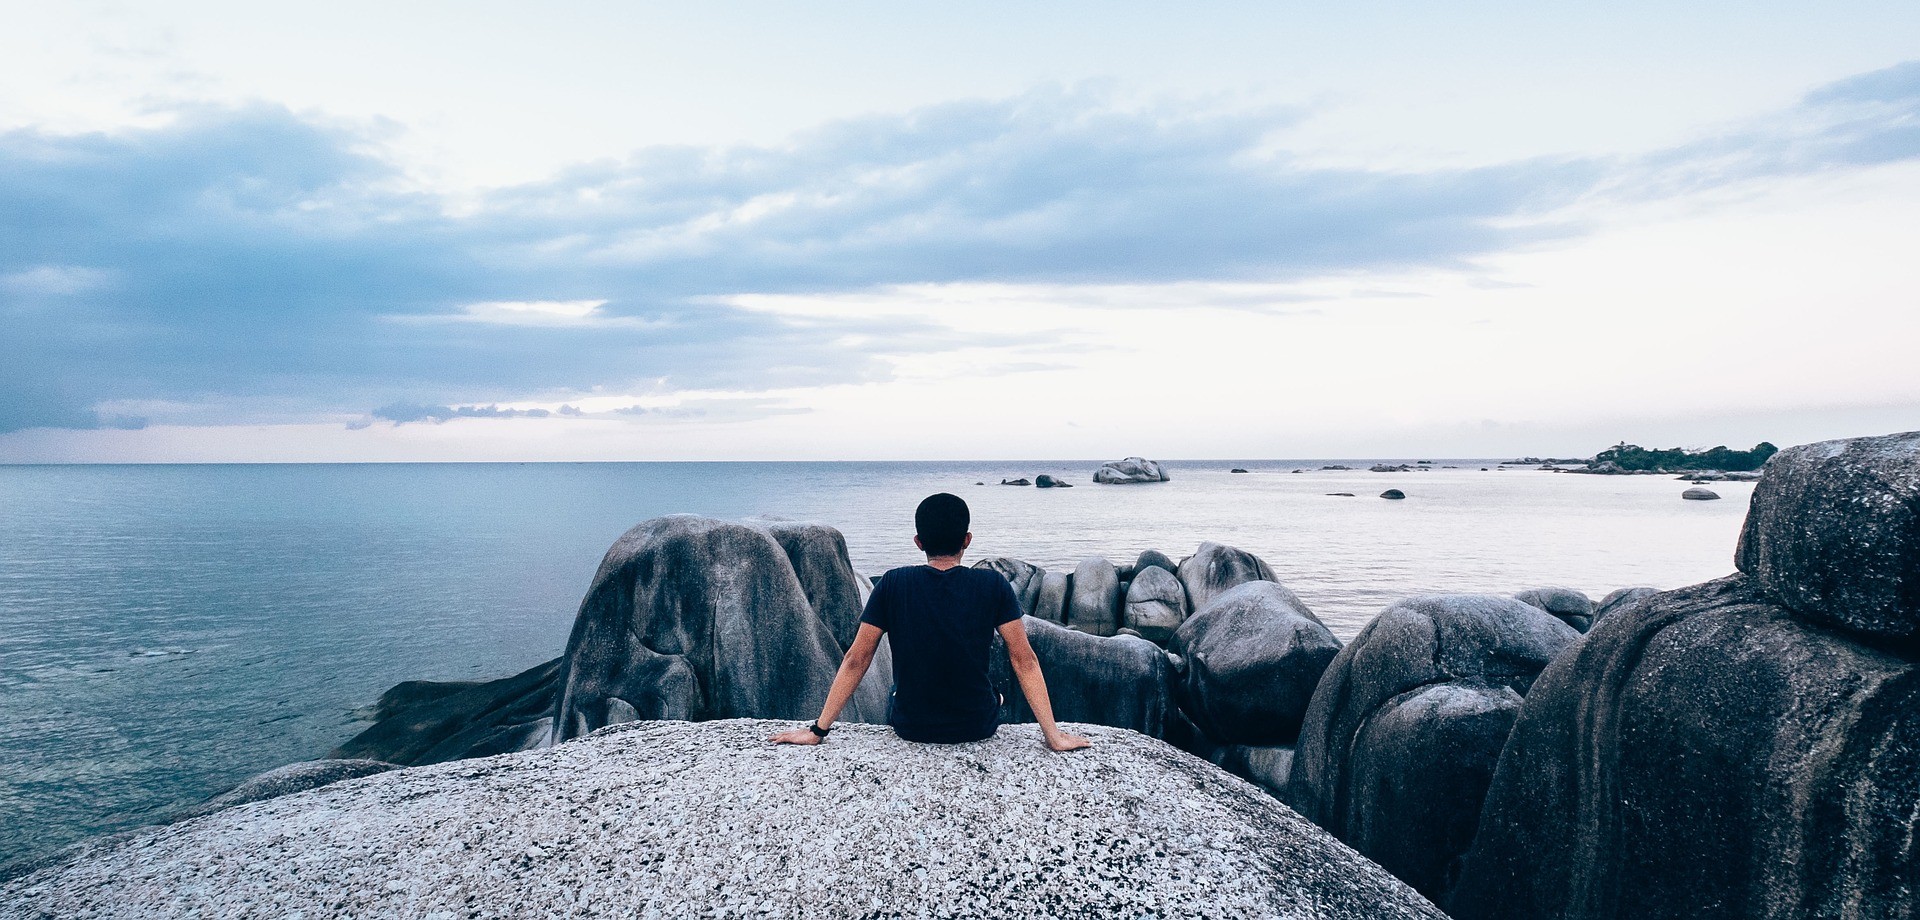 Ein junger Mann sitzt auf einem Felsen und schaut auf das Meer hinaus